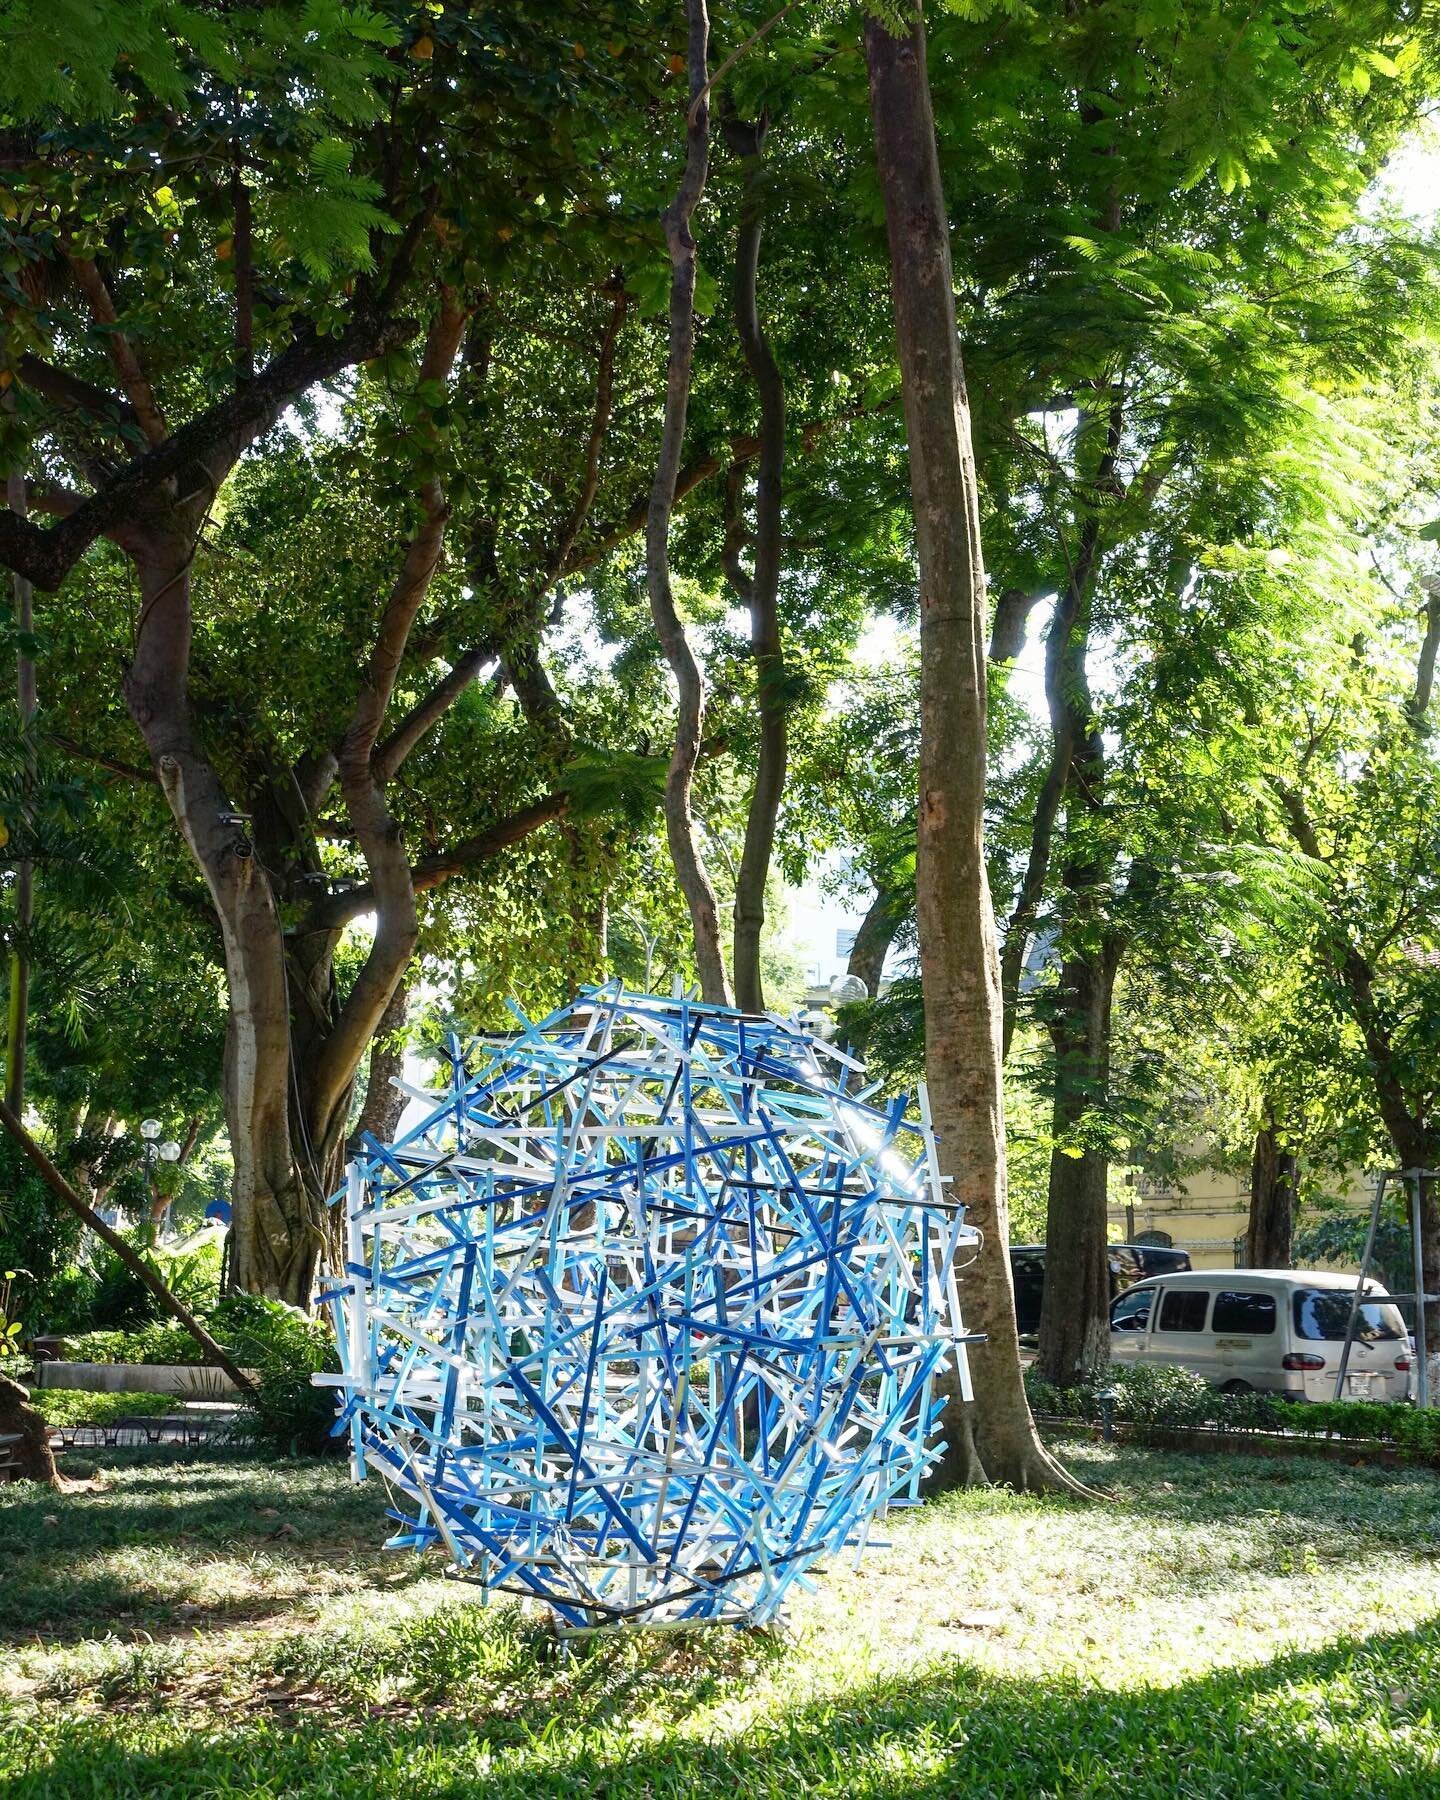 Funky sculpture made of plastic waste
&bull;
&bull;
&bull;
&bull;
&bull;
#Hanoi #Vietnam #hoankiemlake #scuplture #art #design #plastic #reuse #trees #light #shadow #green #blue